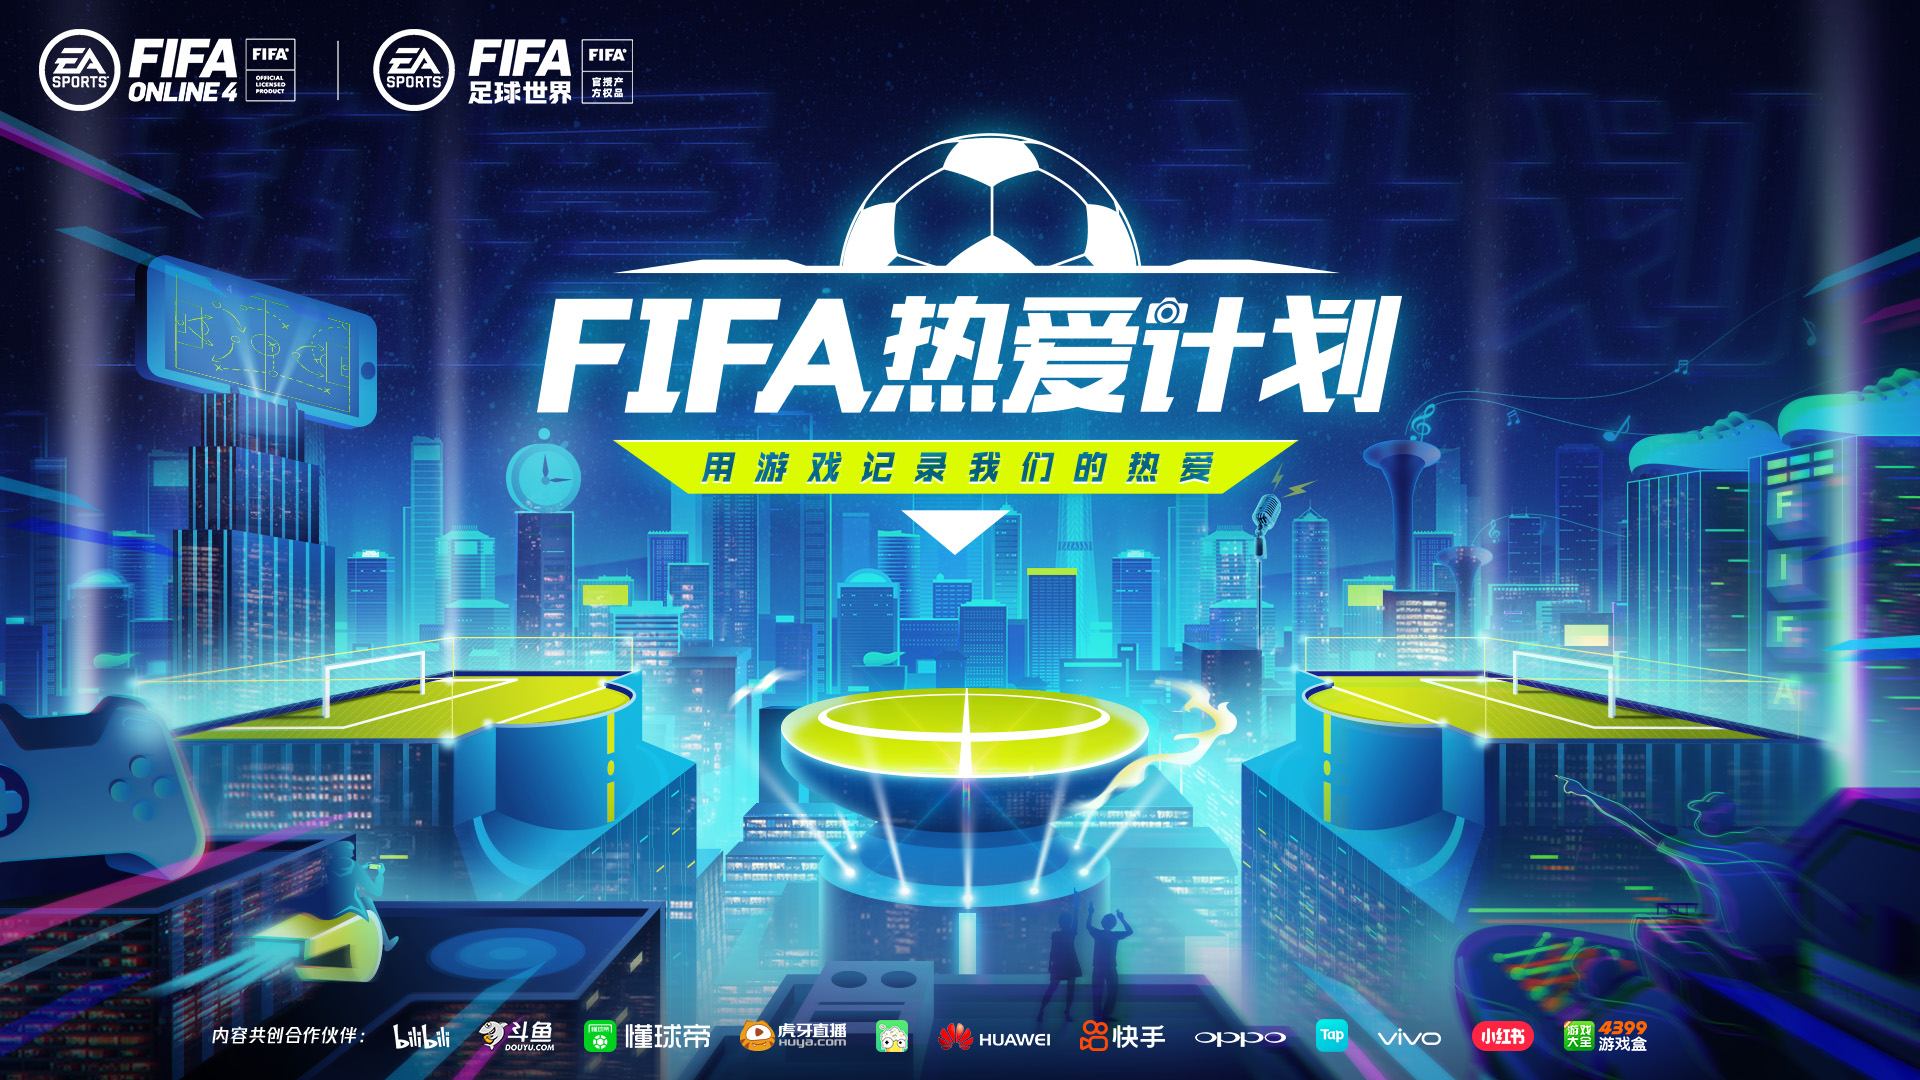 FIFA21 经理人模式吉列尔莫马里潘解析及购买推荐攻略